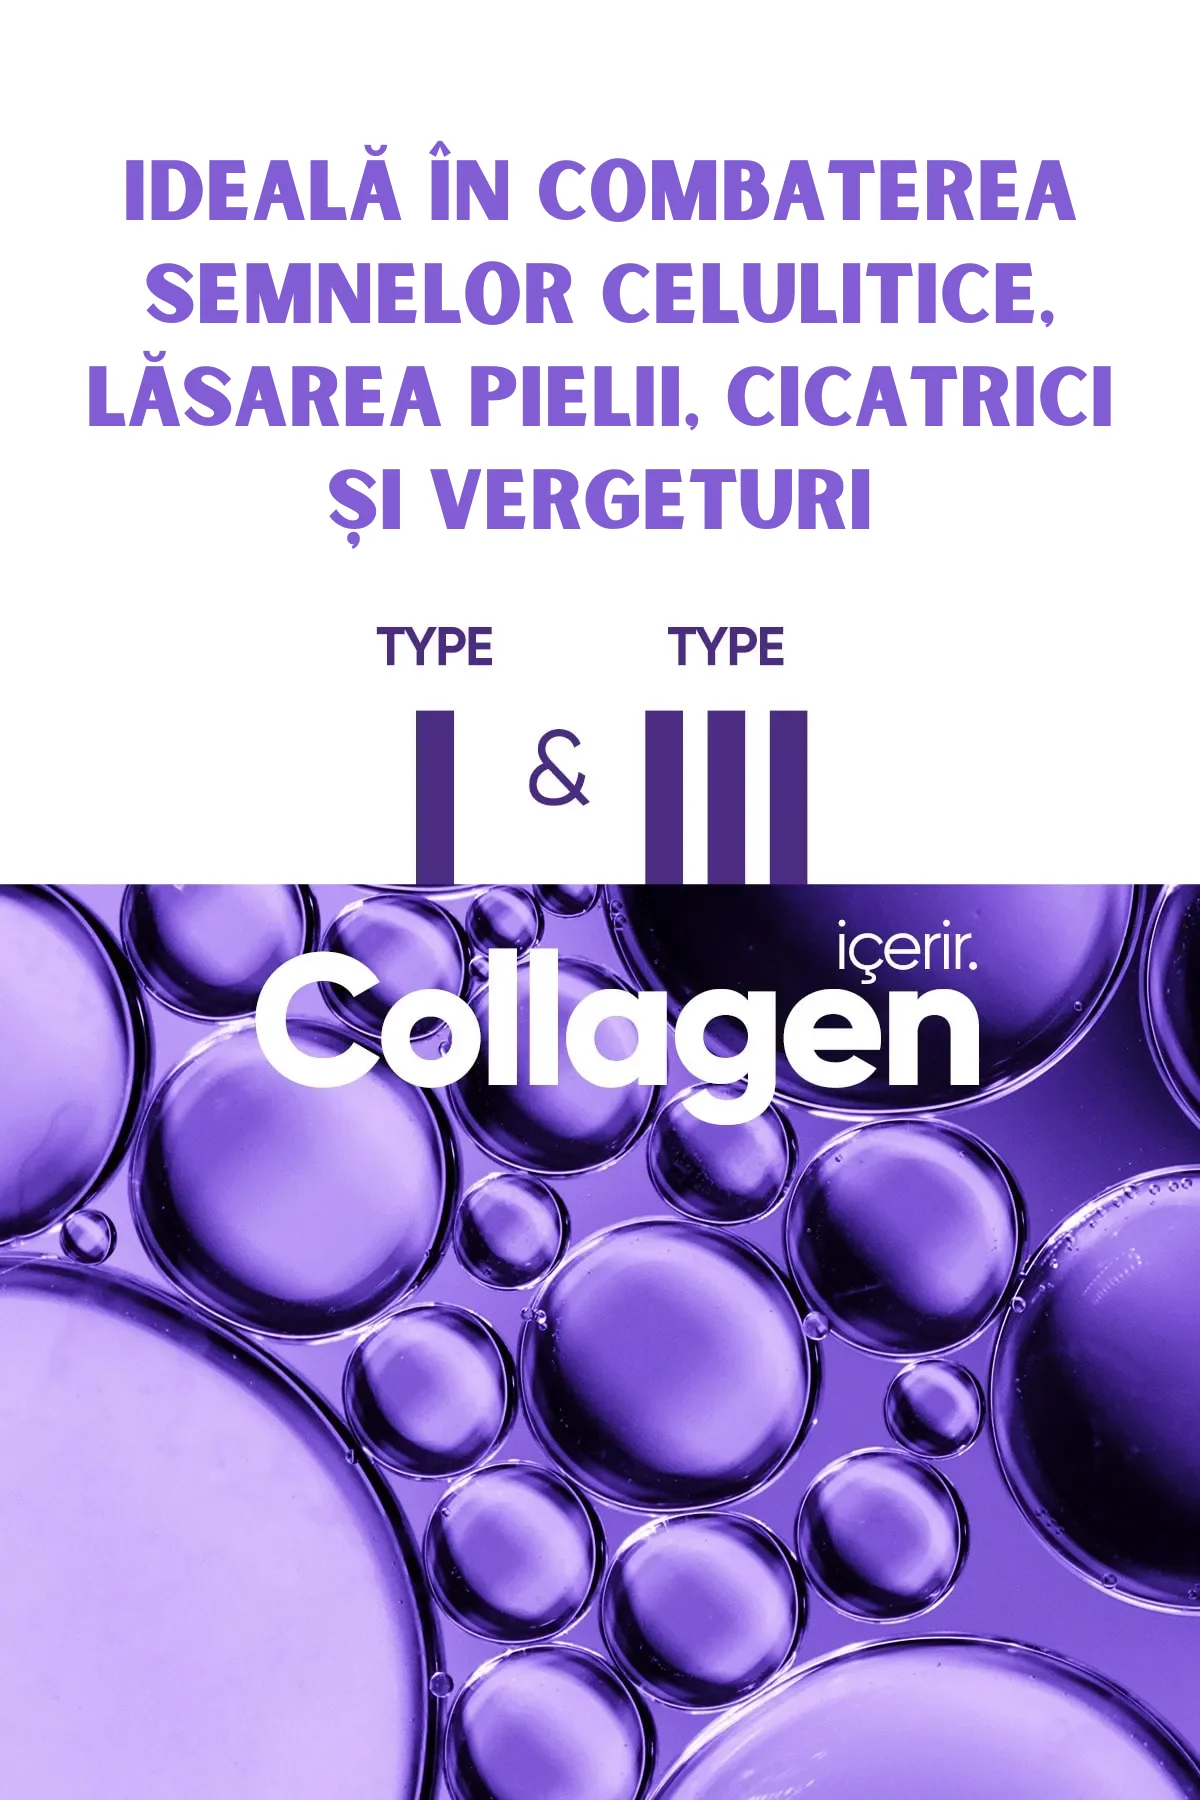 Cremă de Corp Premium Verilaria Q10 & Colagen: Anticelulită, Anti-vergeturi, Super-Elasticitate, 200ml